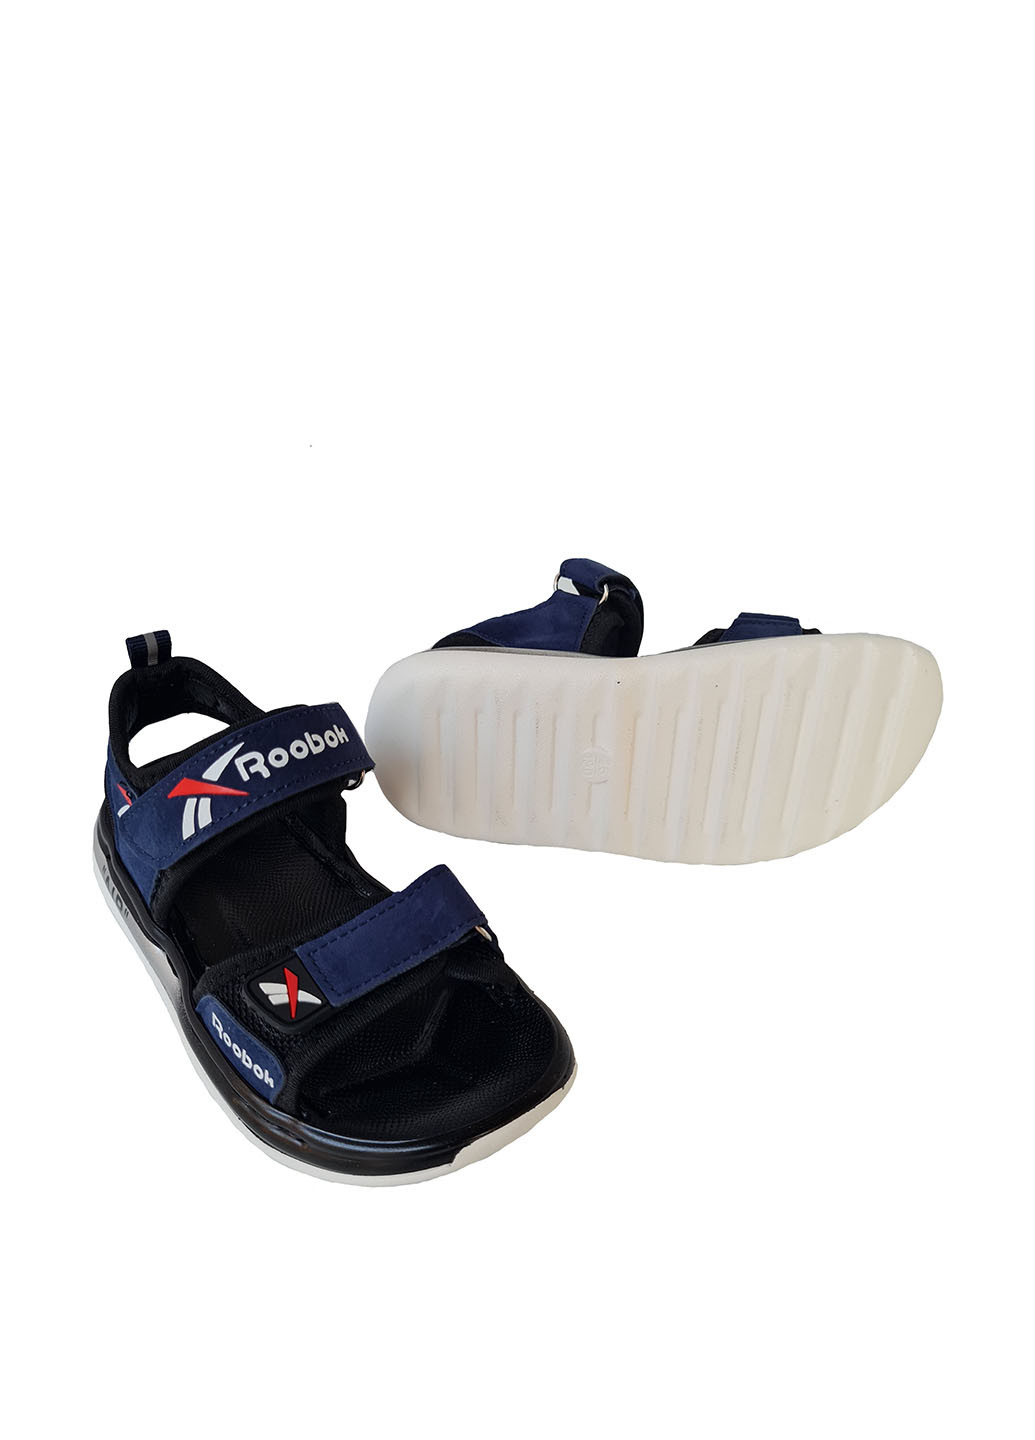 Темно-синие спортивные сандалии Канарейка на липучке